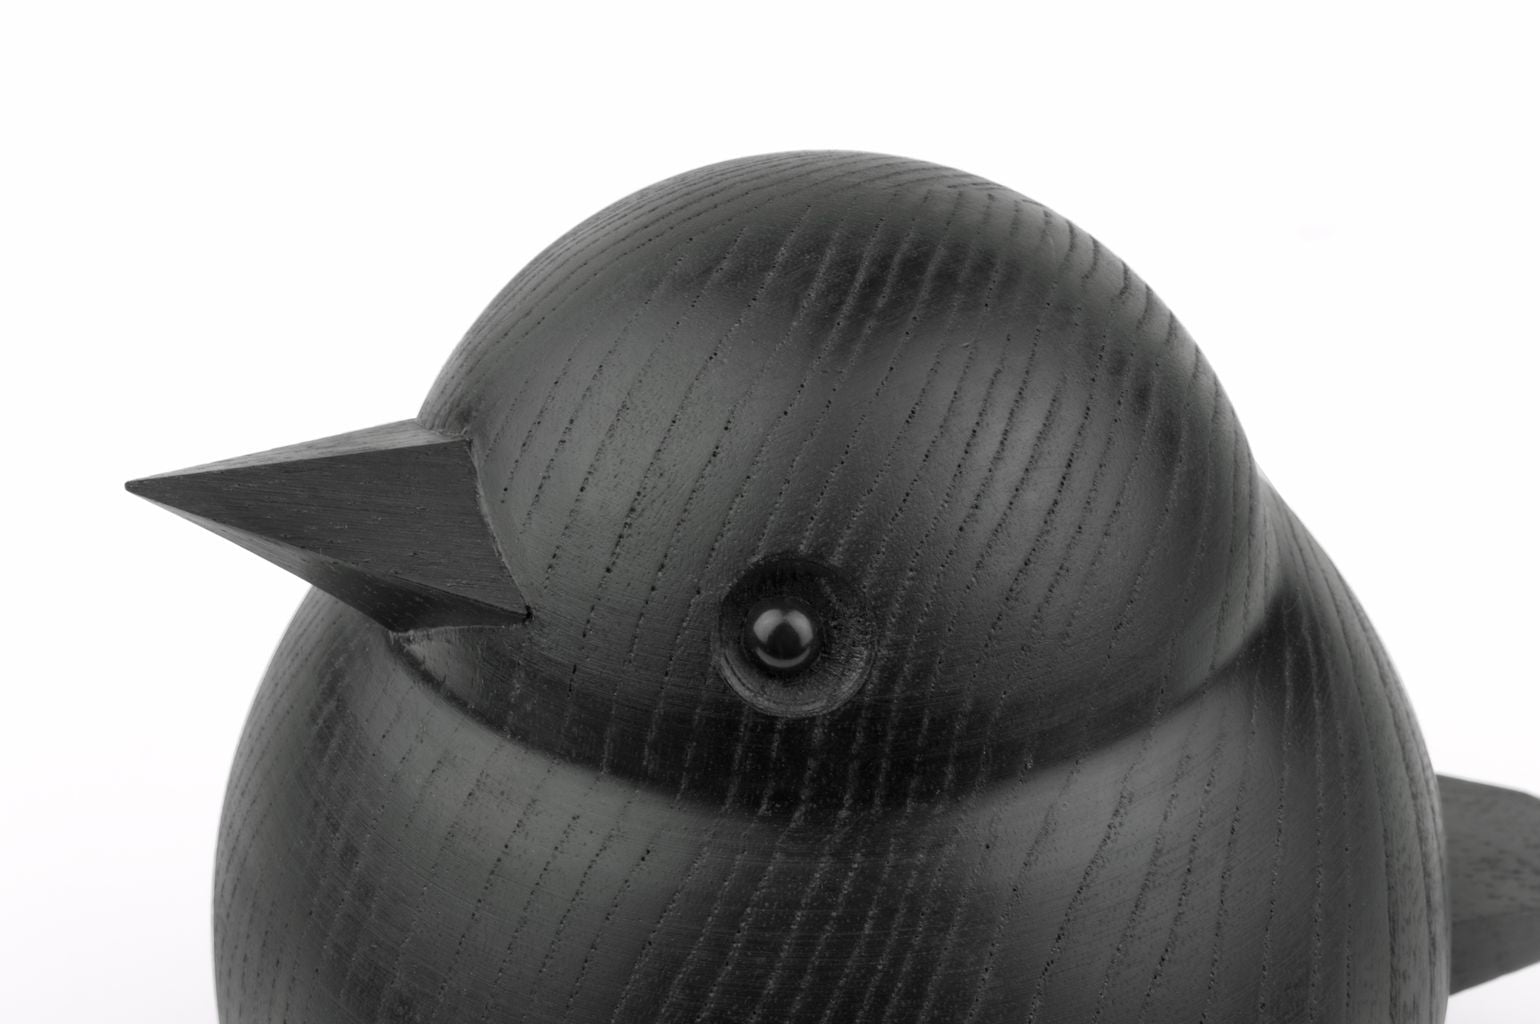 Novoform Design Papa Sparrow Decoratief figuur, zwarte bevlekte eiken